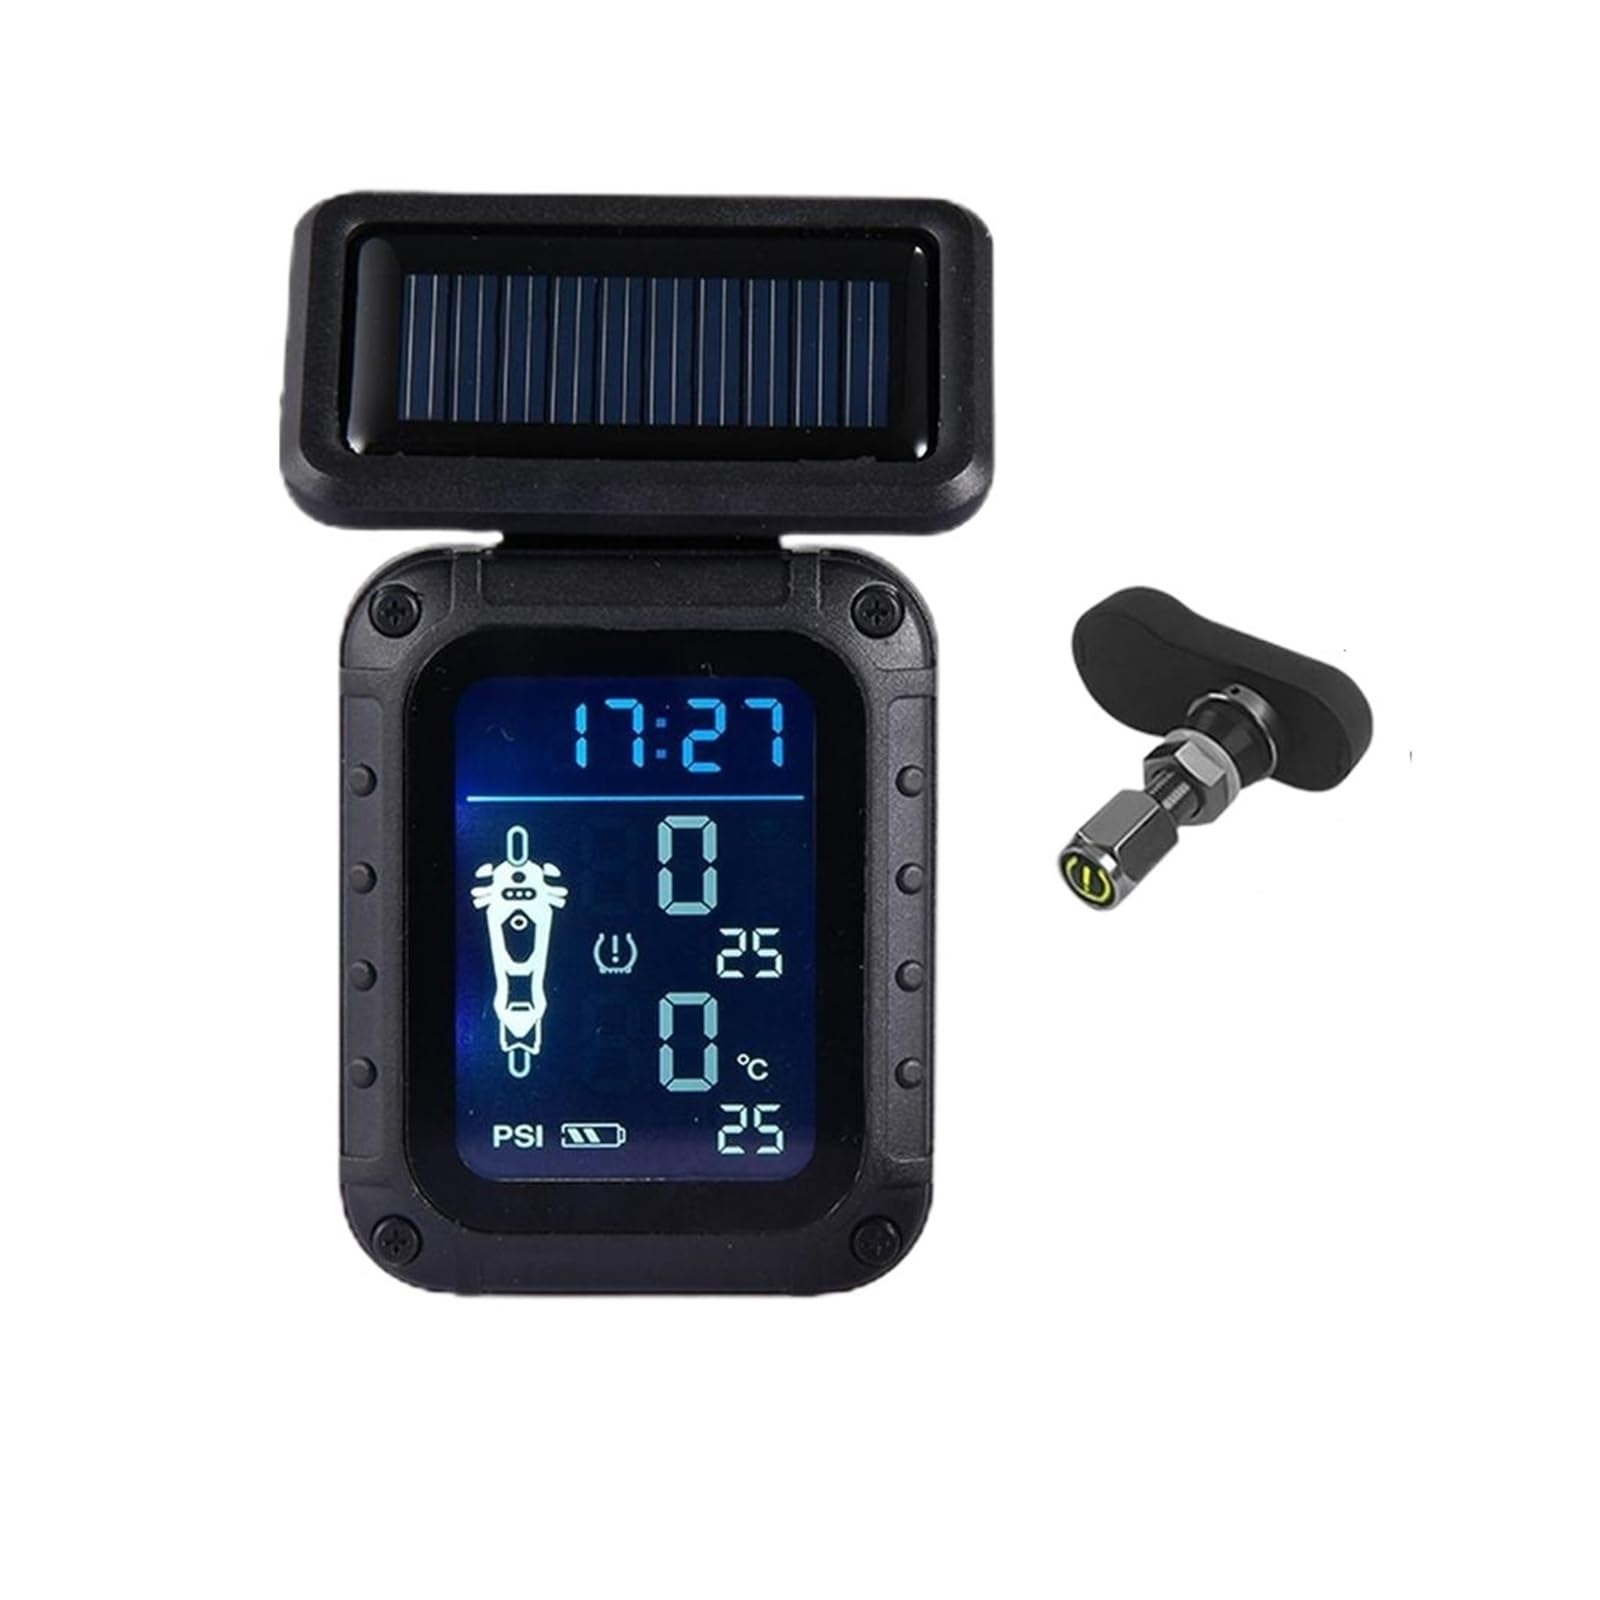 Motorrad TPMS Druck Überwachung System Solar Ladung Accrate Reifen Druck Monitor Reifen Temperatur Alarm for Fahrrad Lkw(External) von CXYLOVELG